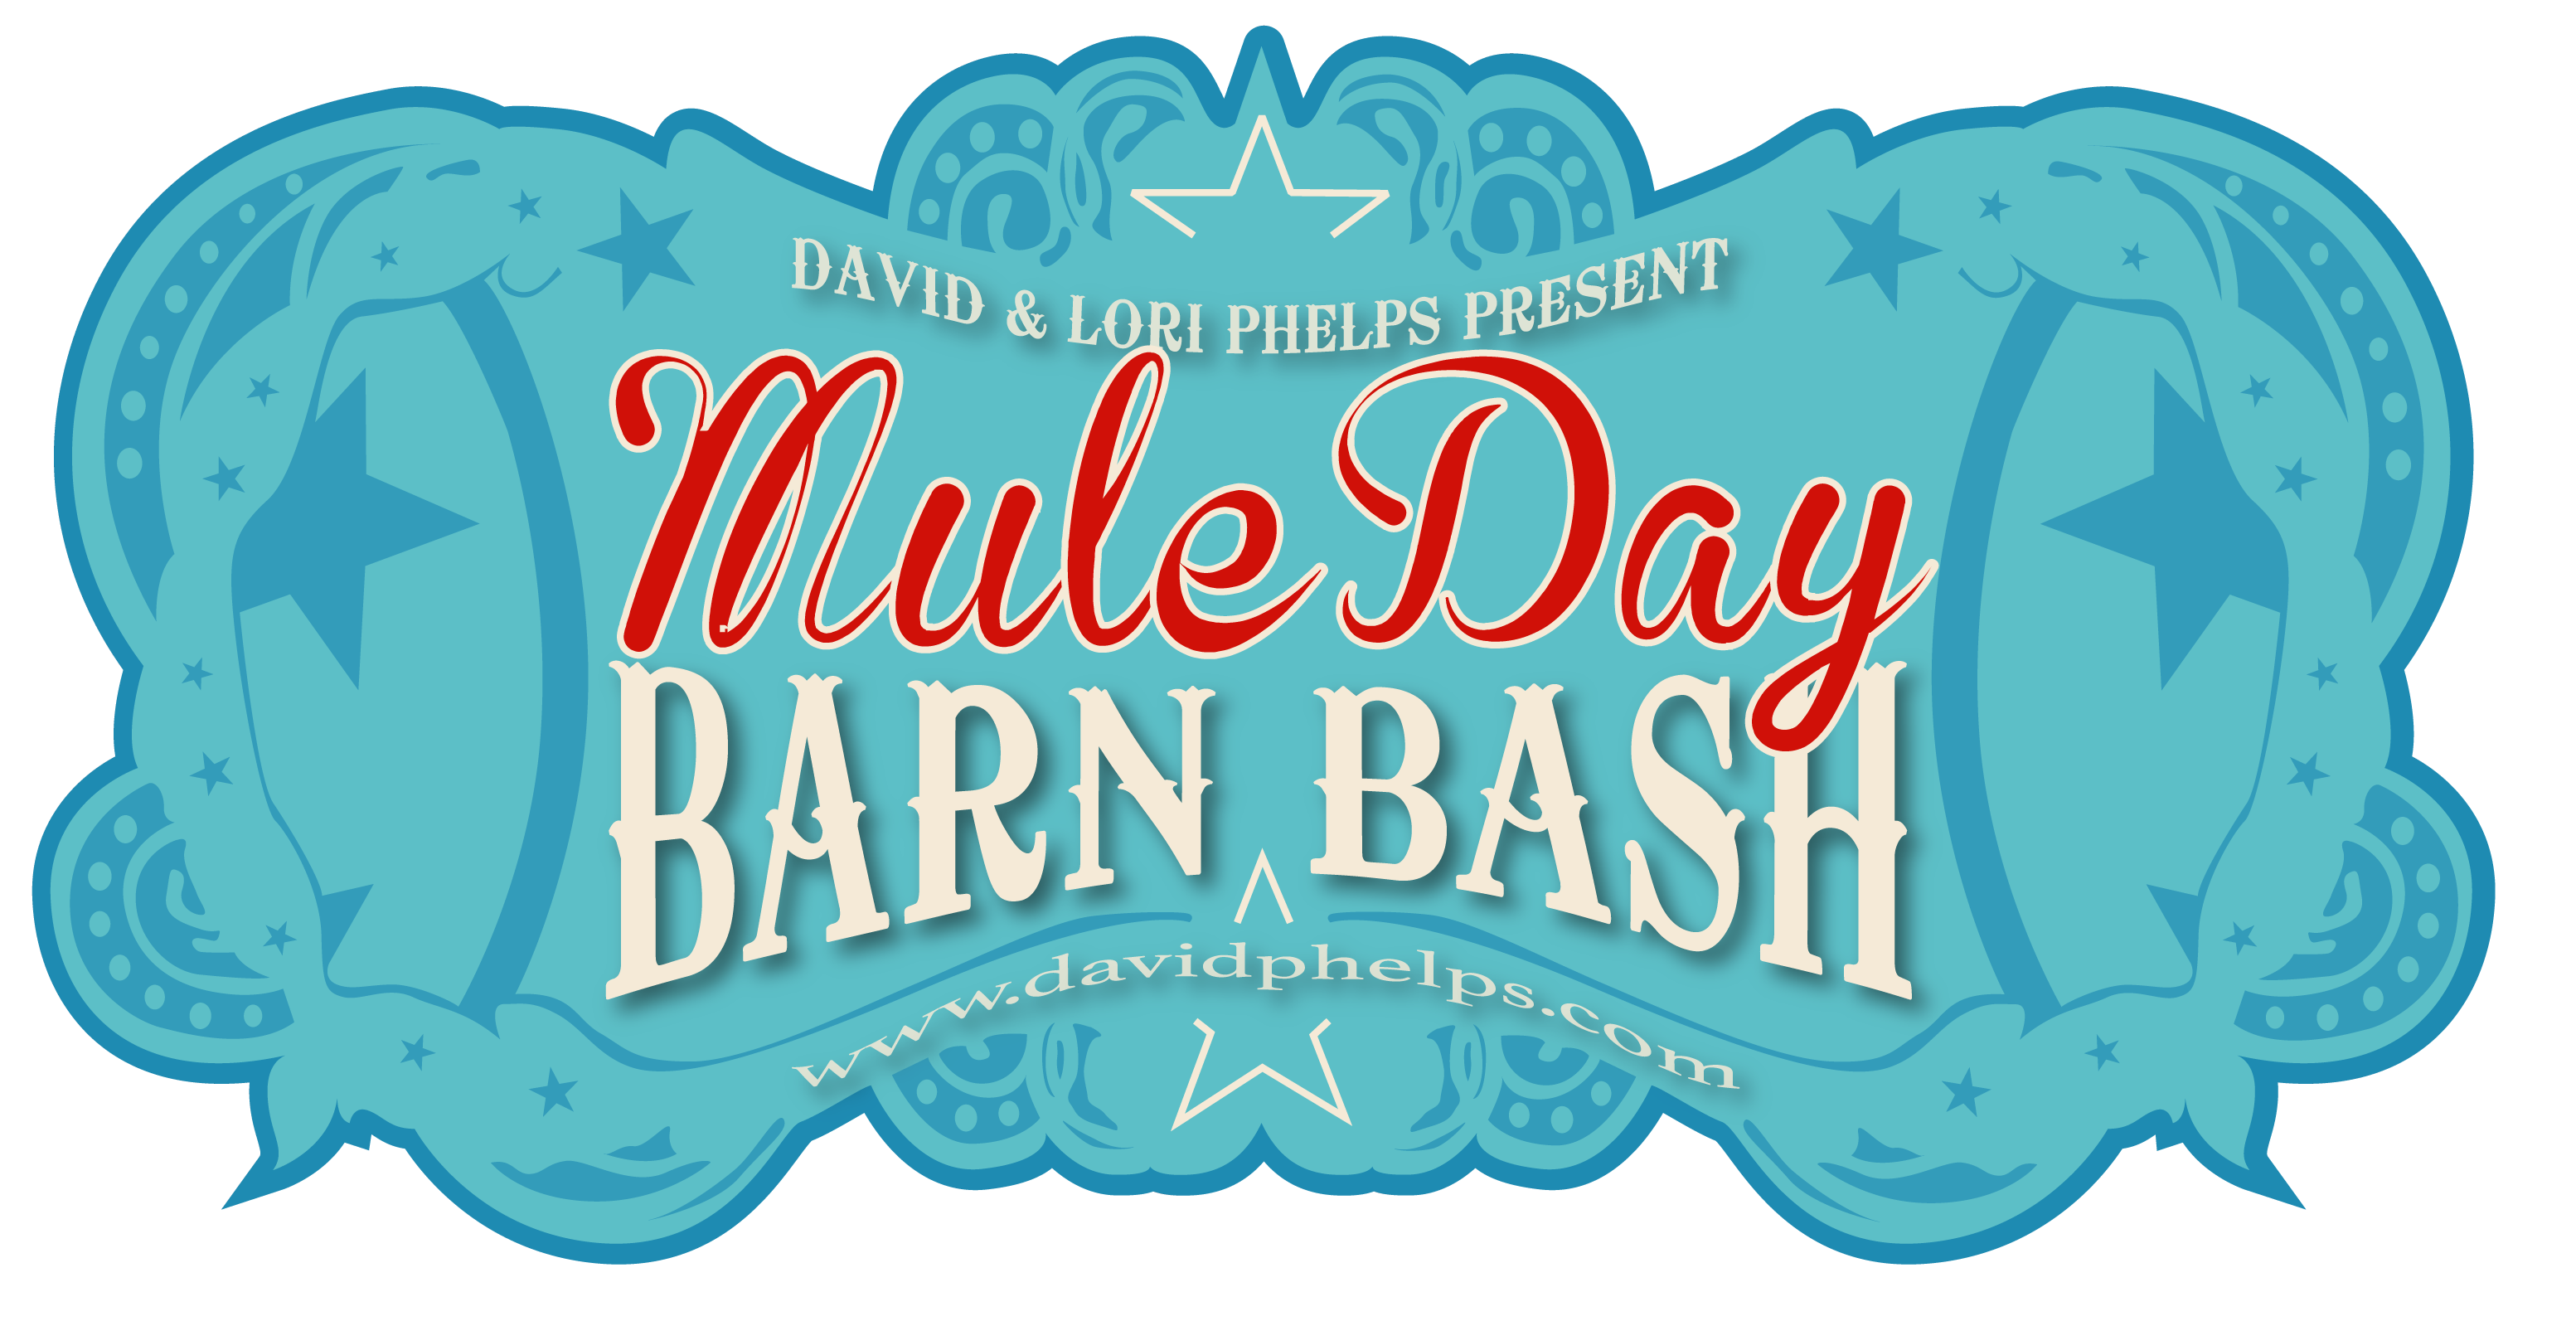 Mule Day Barn Bash